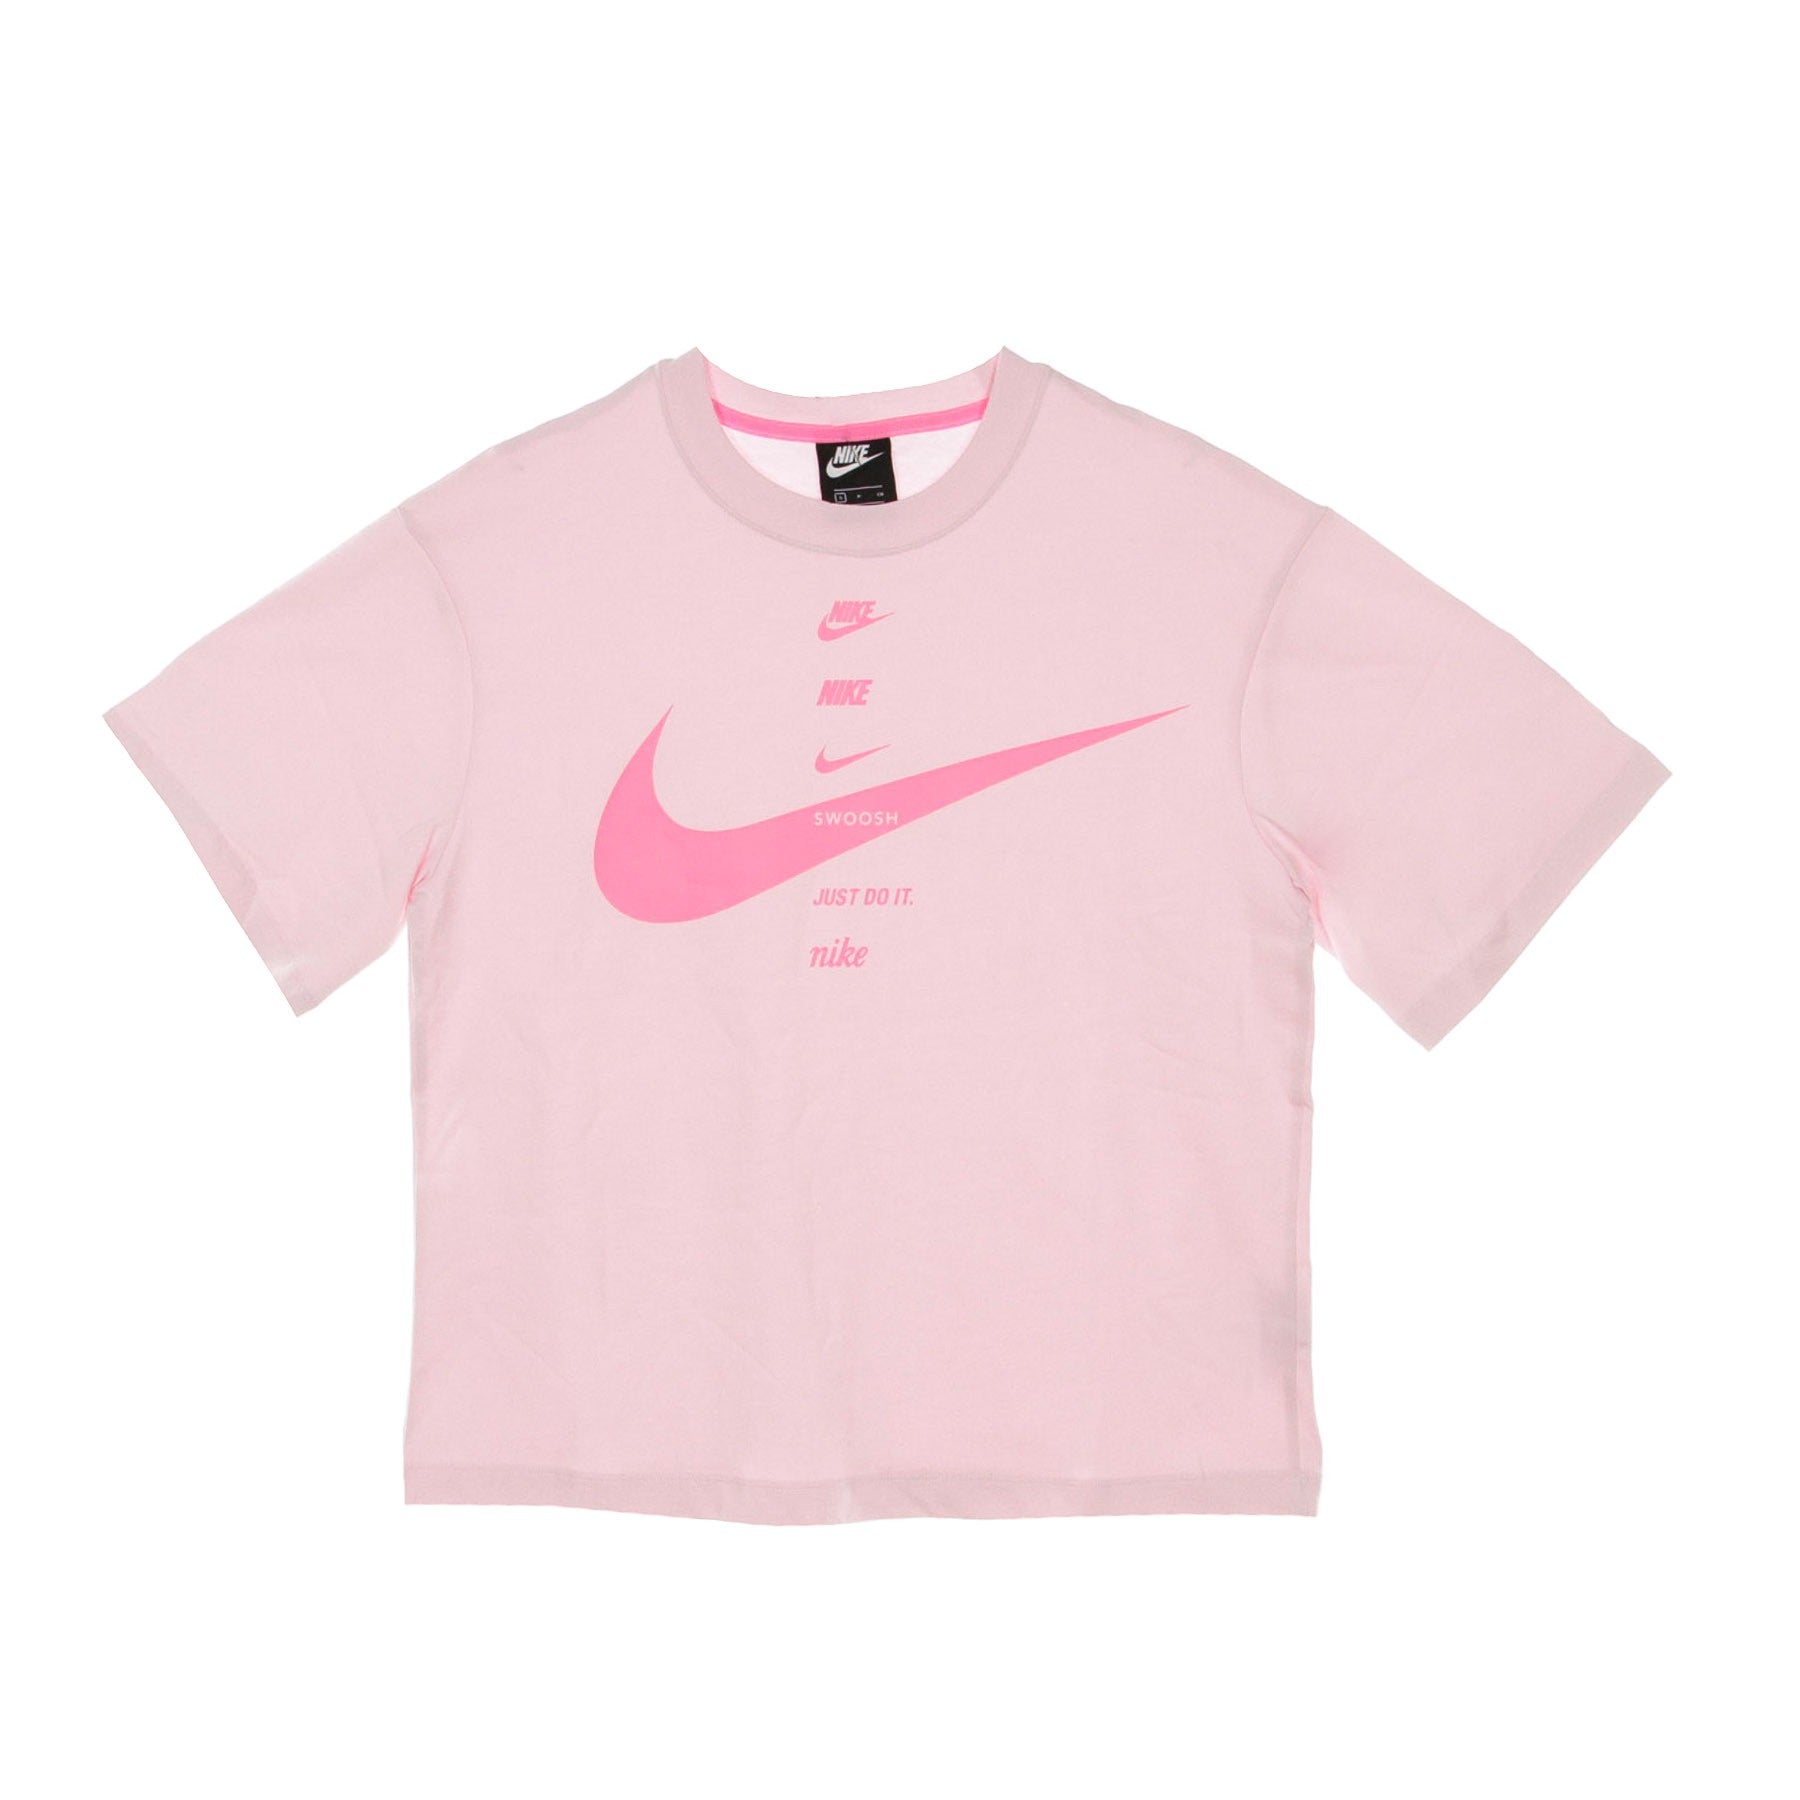 Women's Swoosh Top Pink Foam /pink Glow T-shirt